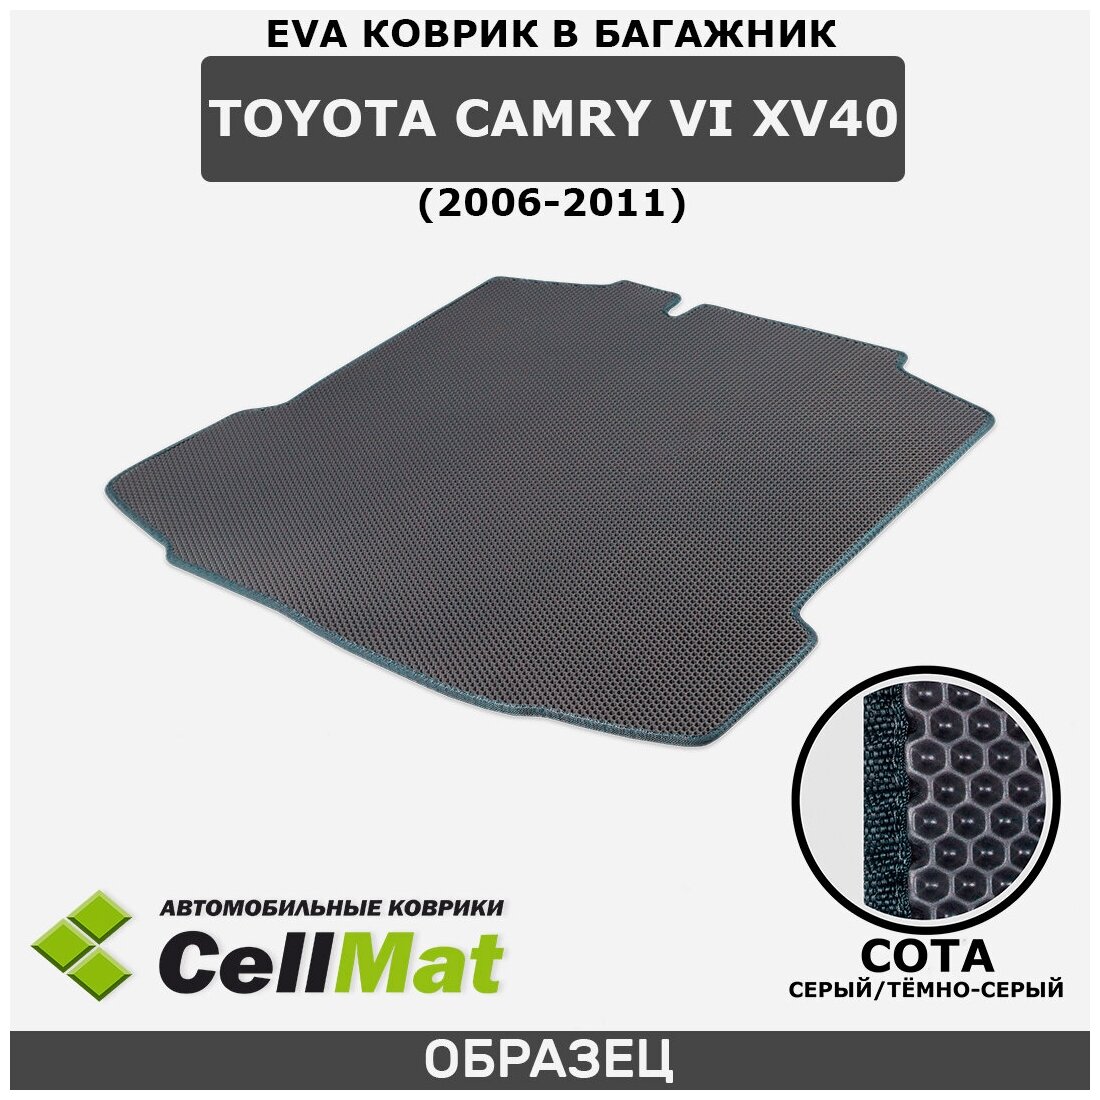 ЭВА ЕВА EVA коврик CellMat в багажник Toyota Camry VI XV40, Тойота Камри, 6-ое поколение, 2006-2011